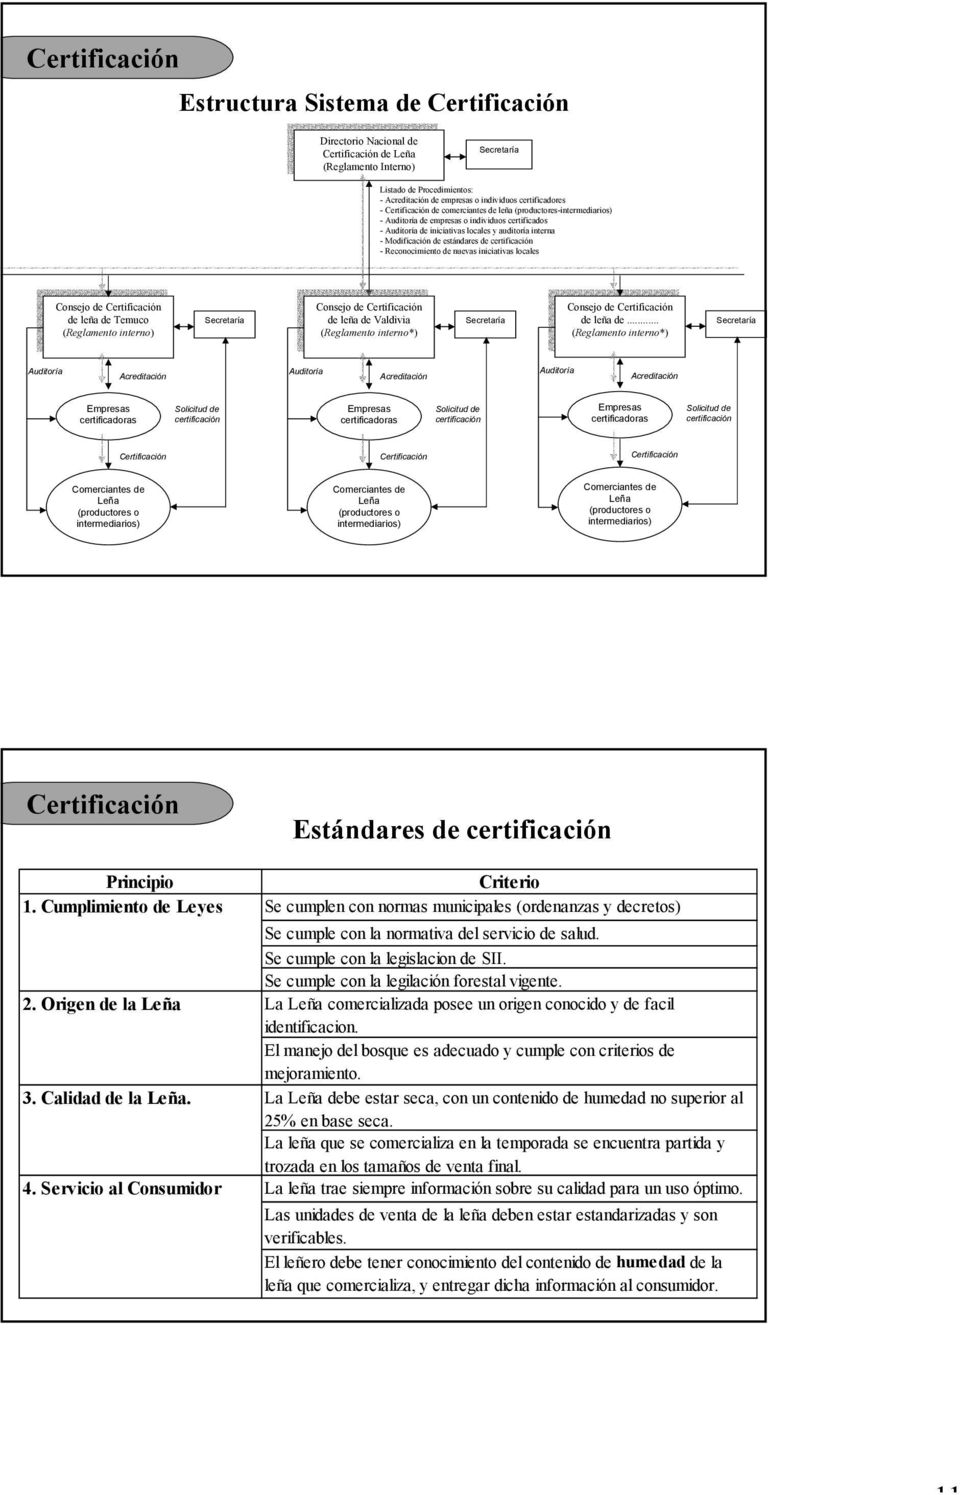 Modificación de estándares de certificación - Reconocimiento de nuevas iniciativas locales Consejo de Certificación de leña de Temuco (Reglamento interno) Secretaría Consejo de Certificación de leña